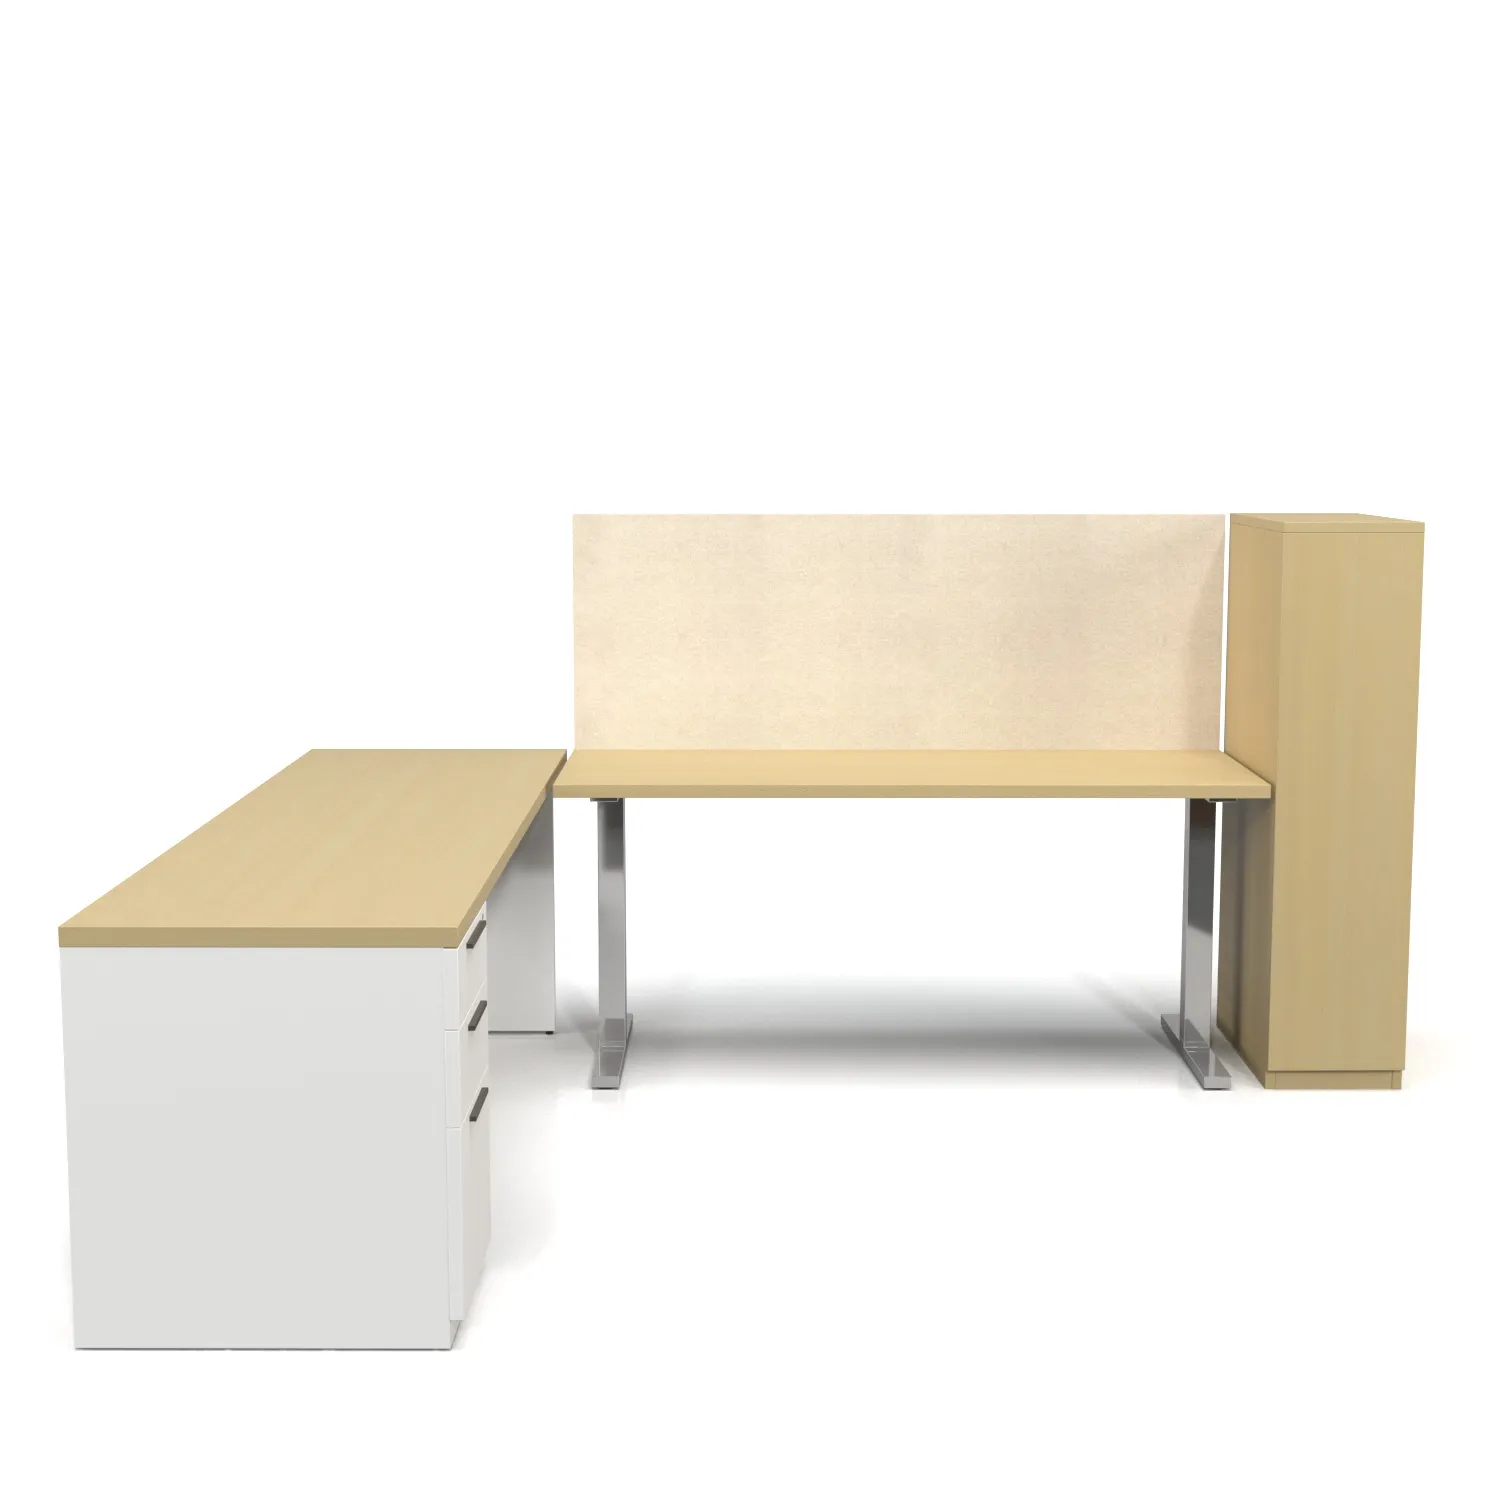 L Shape Adjustable Office Desk And Table PBR 3D Model_03